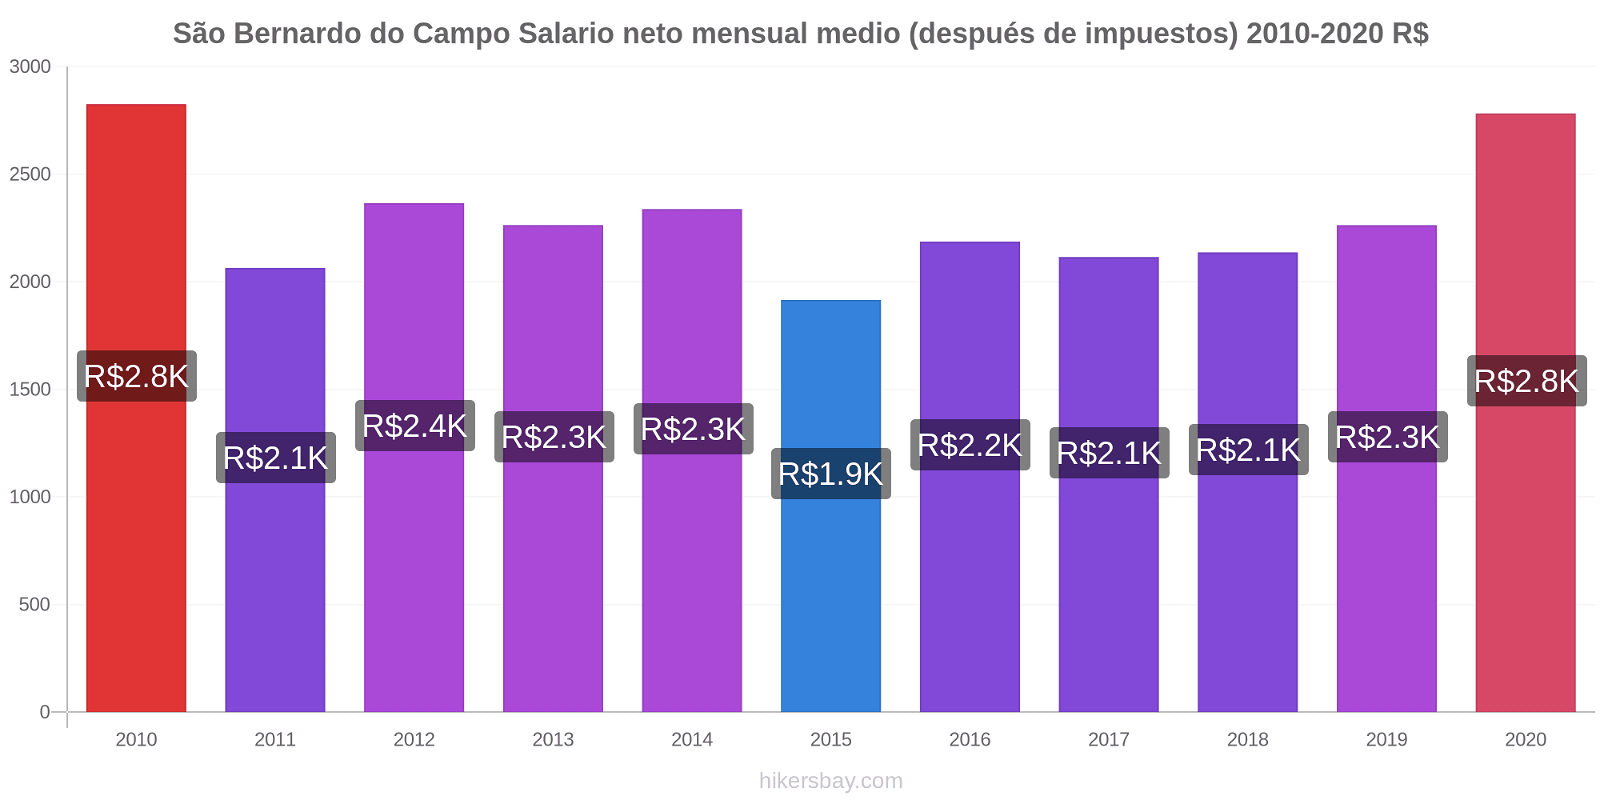 São Bernardo do Campo cambios de precios Promedio mensual del salario neto (después de pagar impuestos) hikersbay.com